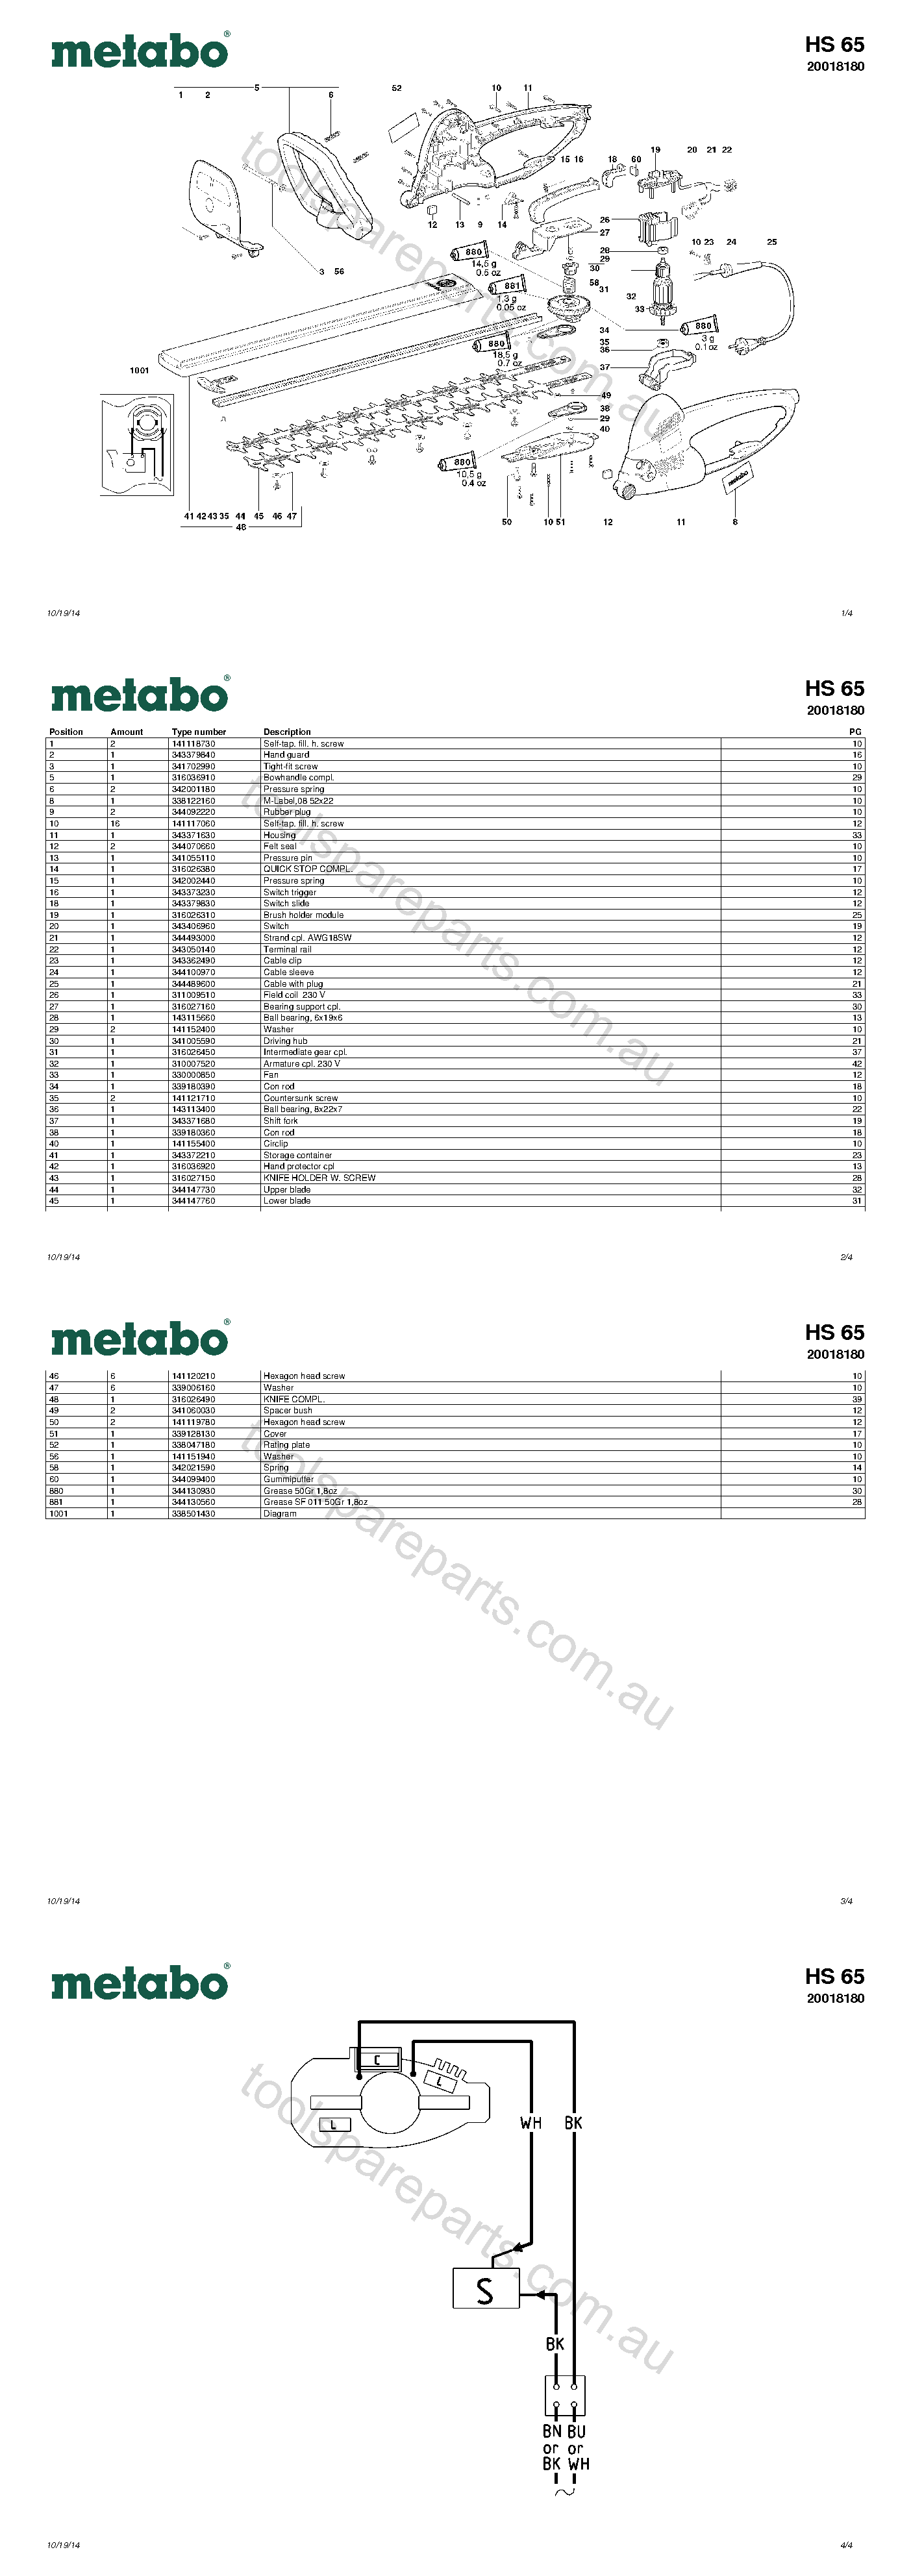 Metabo HS 65 20018180  Diagram 1